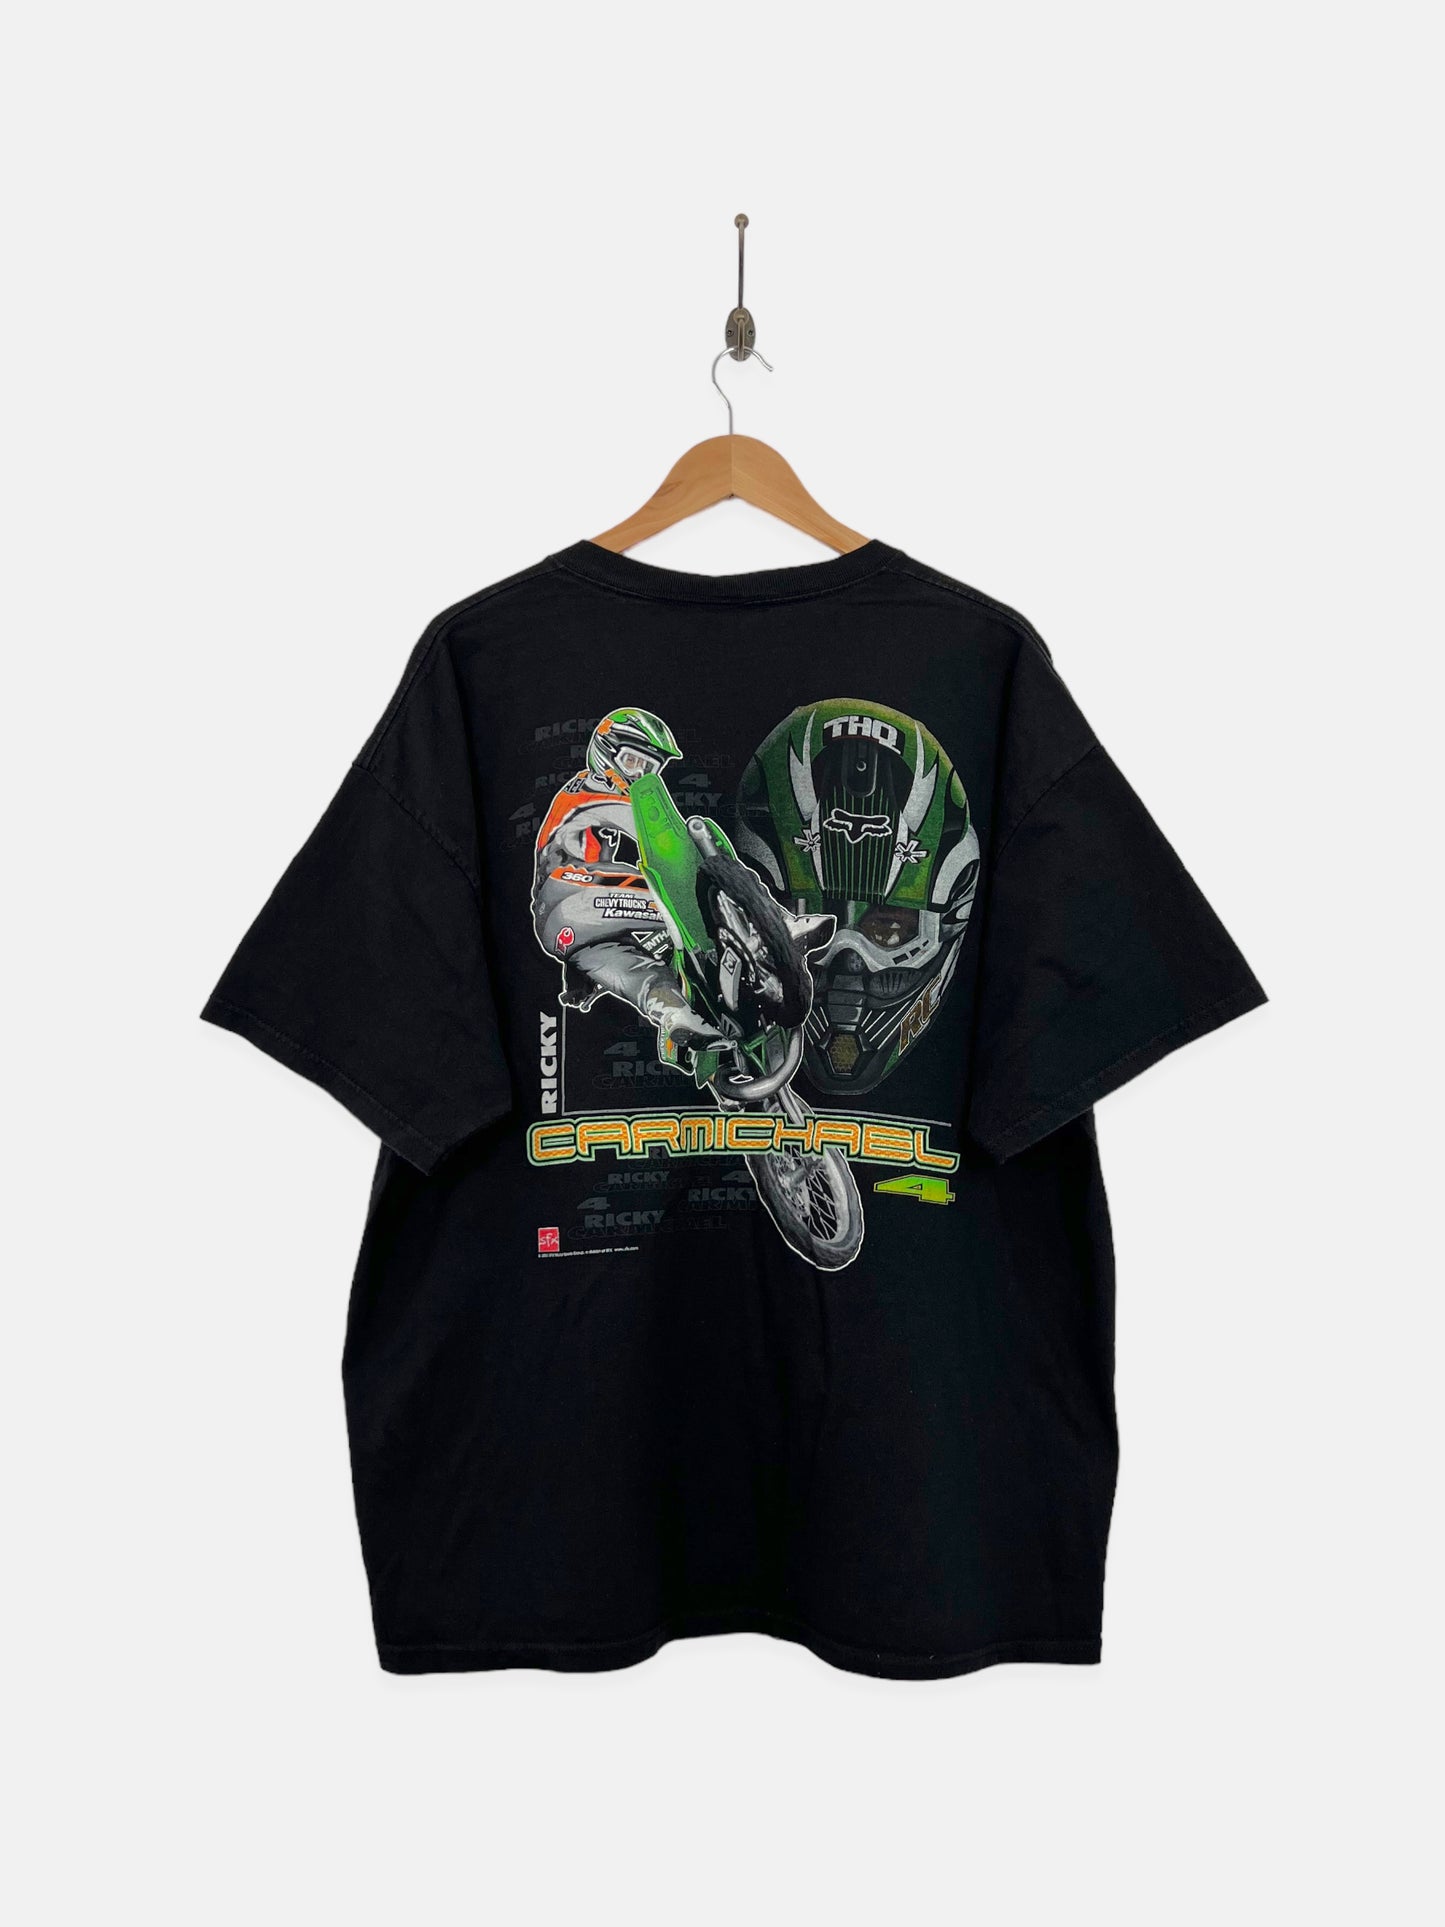 Motocross RC4 Ricky Carmichael #4 Vintage T-Shirt Size XL-2XL